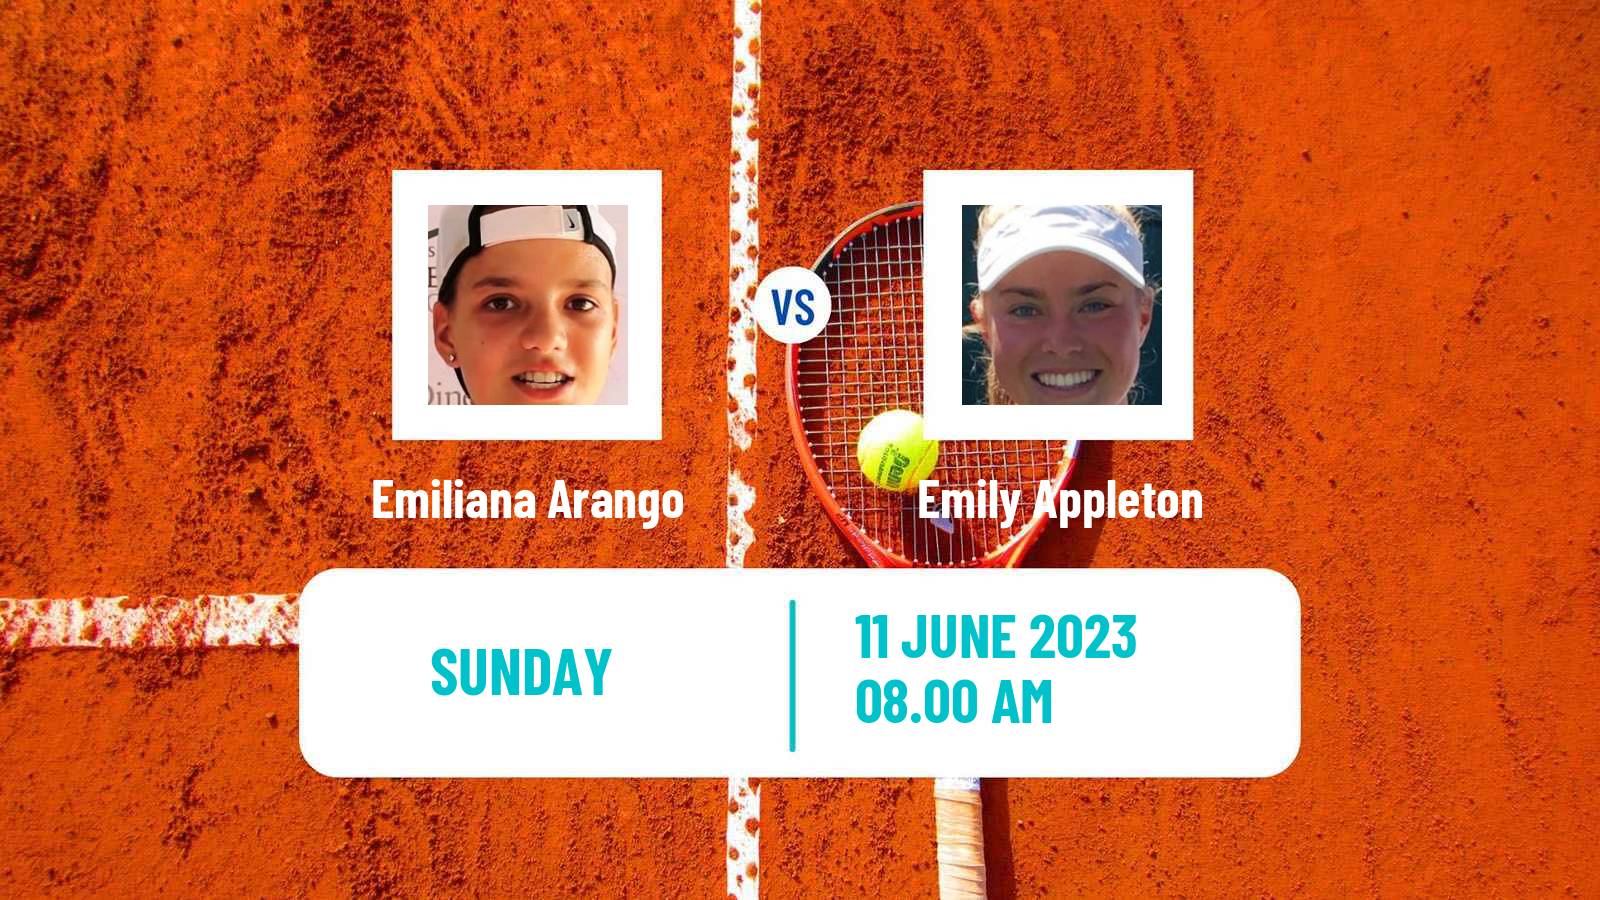 Tennis WTA Nottingham Emiliana Arango - Emily Appleton